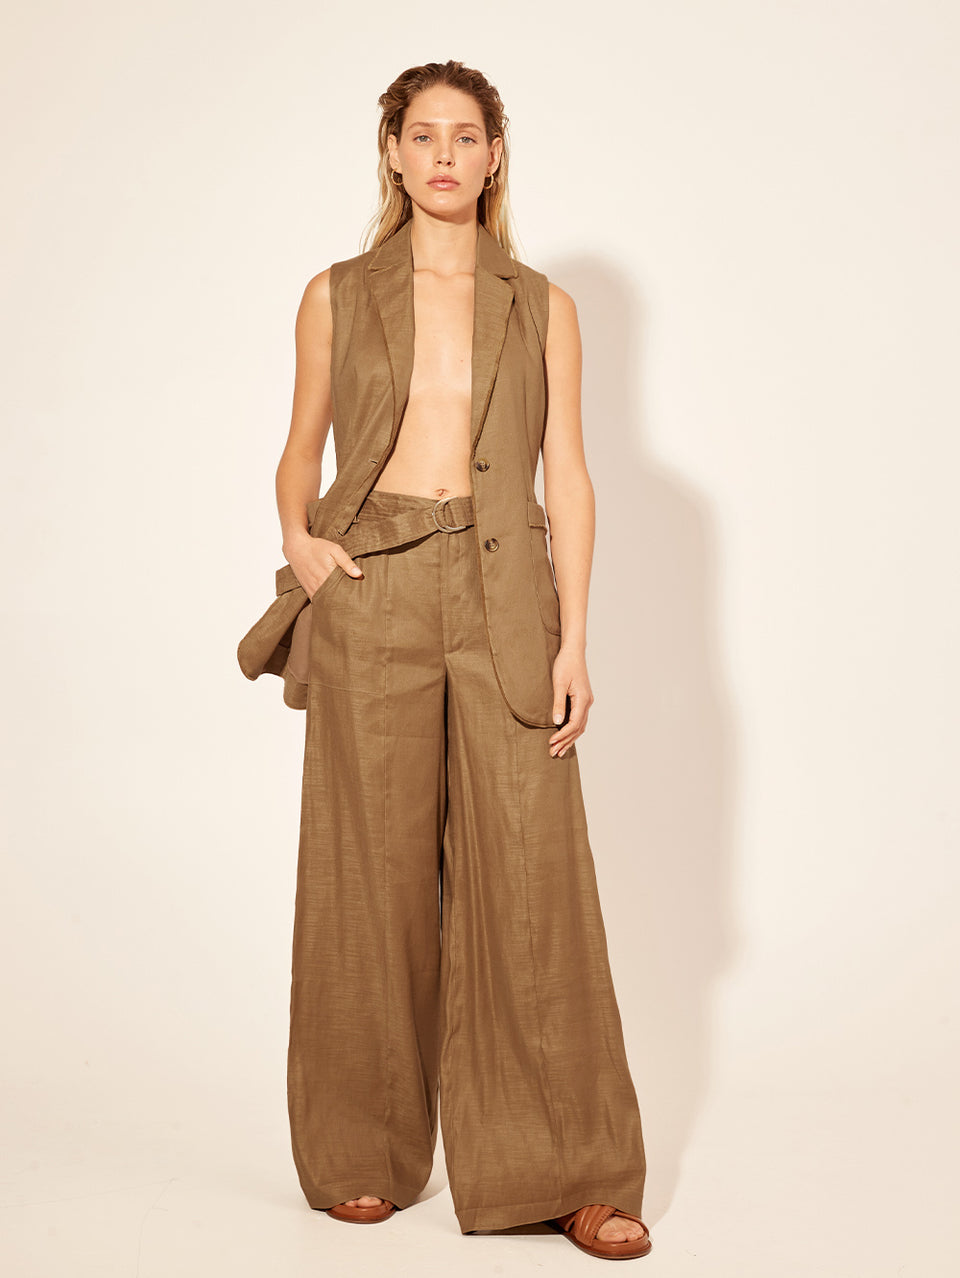 Penelope Pant KIVARI | Model wears brown tailored pant